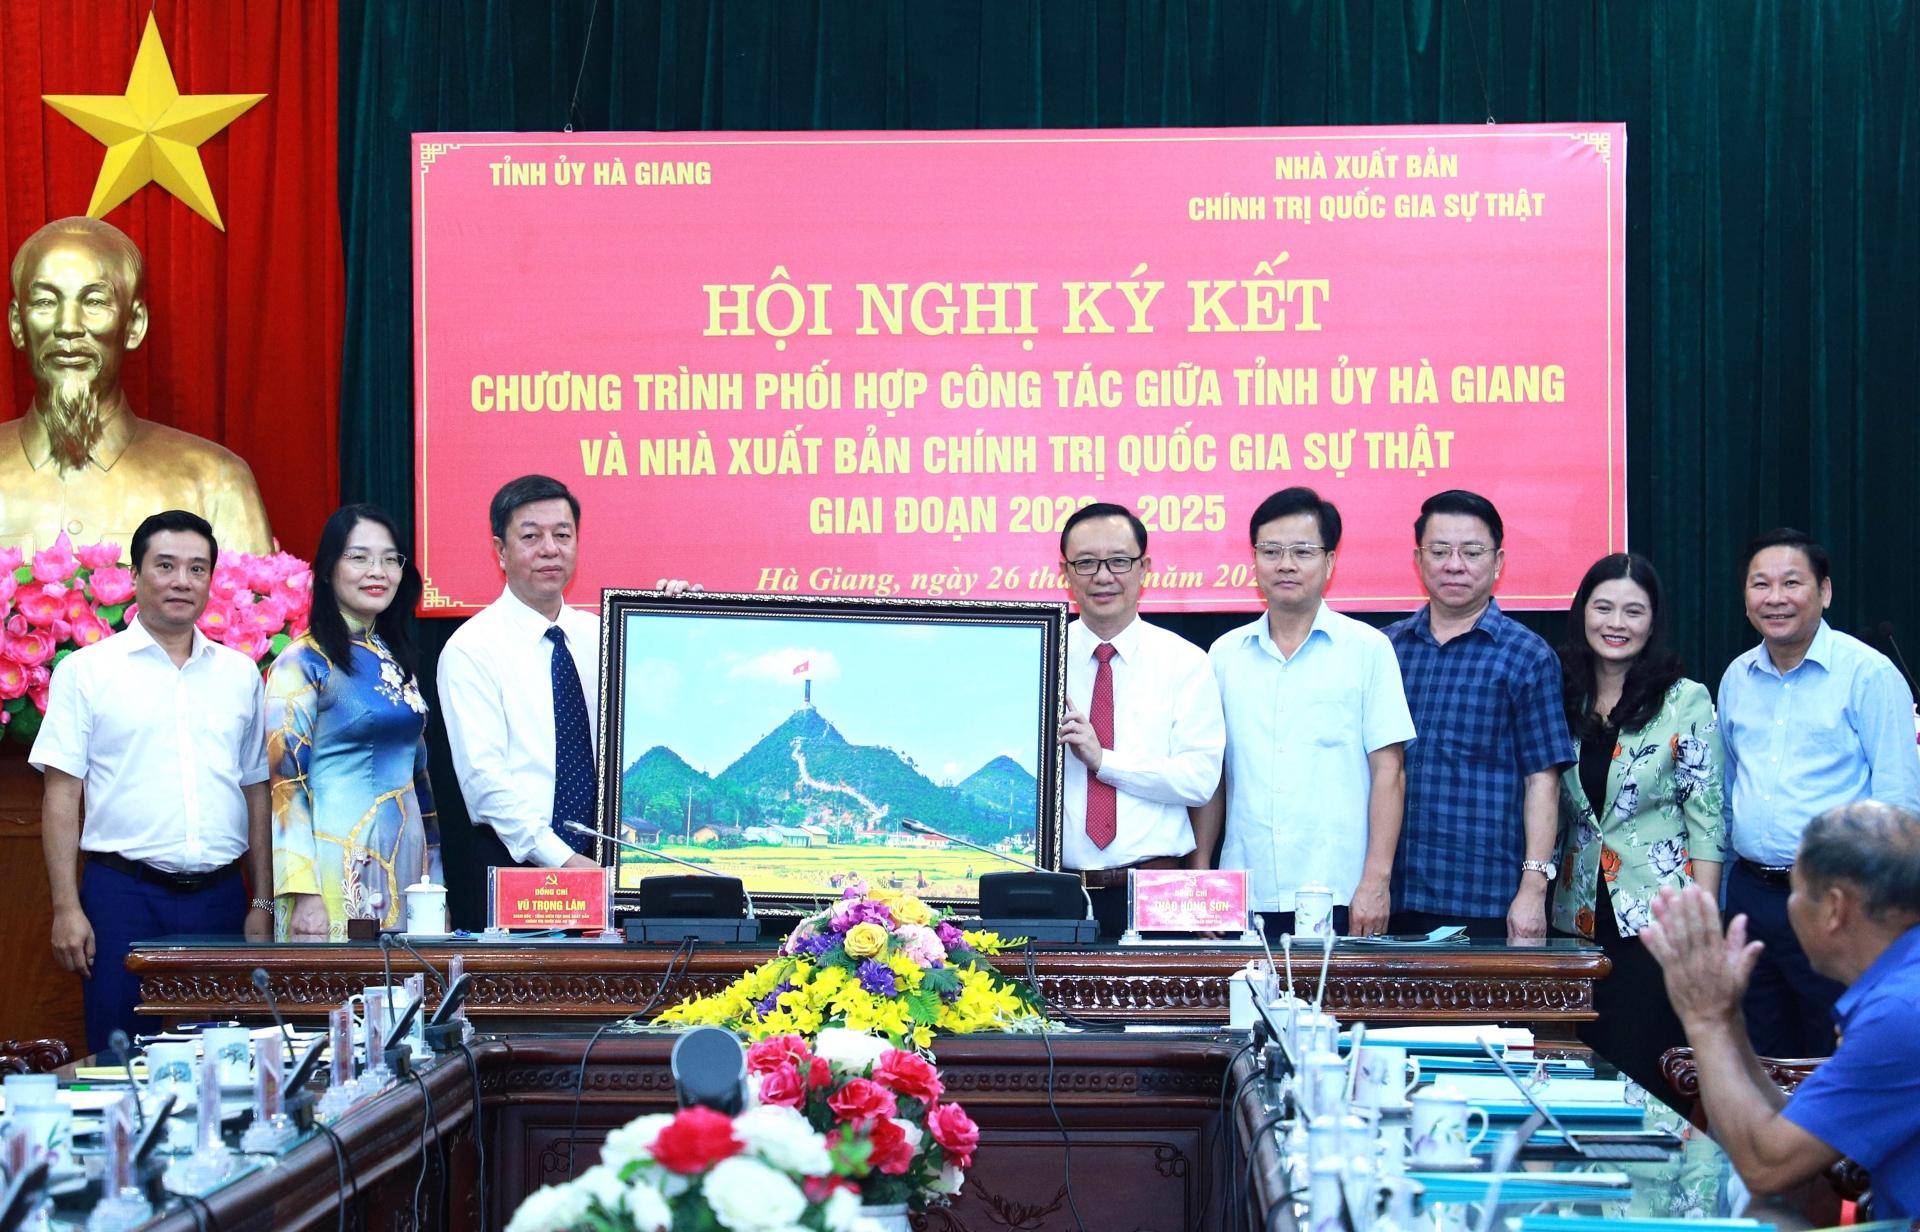 Đồng chí Thào Hồng Sơn tặng Giám đốc, Tổng Biên tập Nhà xuất bản Chính trị Quốc gia Sự thật Vũ Trọng Lâm bức ảnh Cột cờ Quốc gia Lũng Cú.